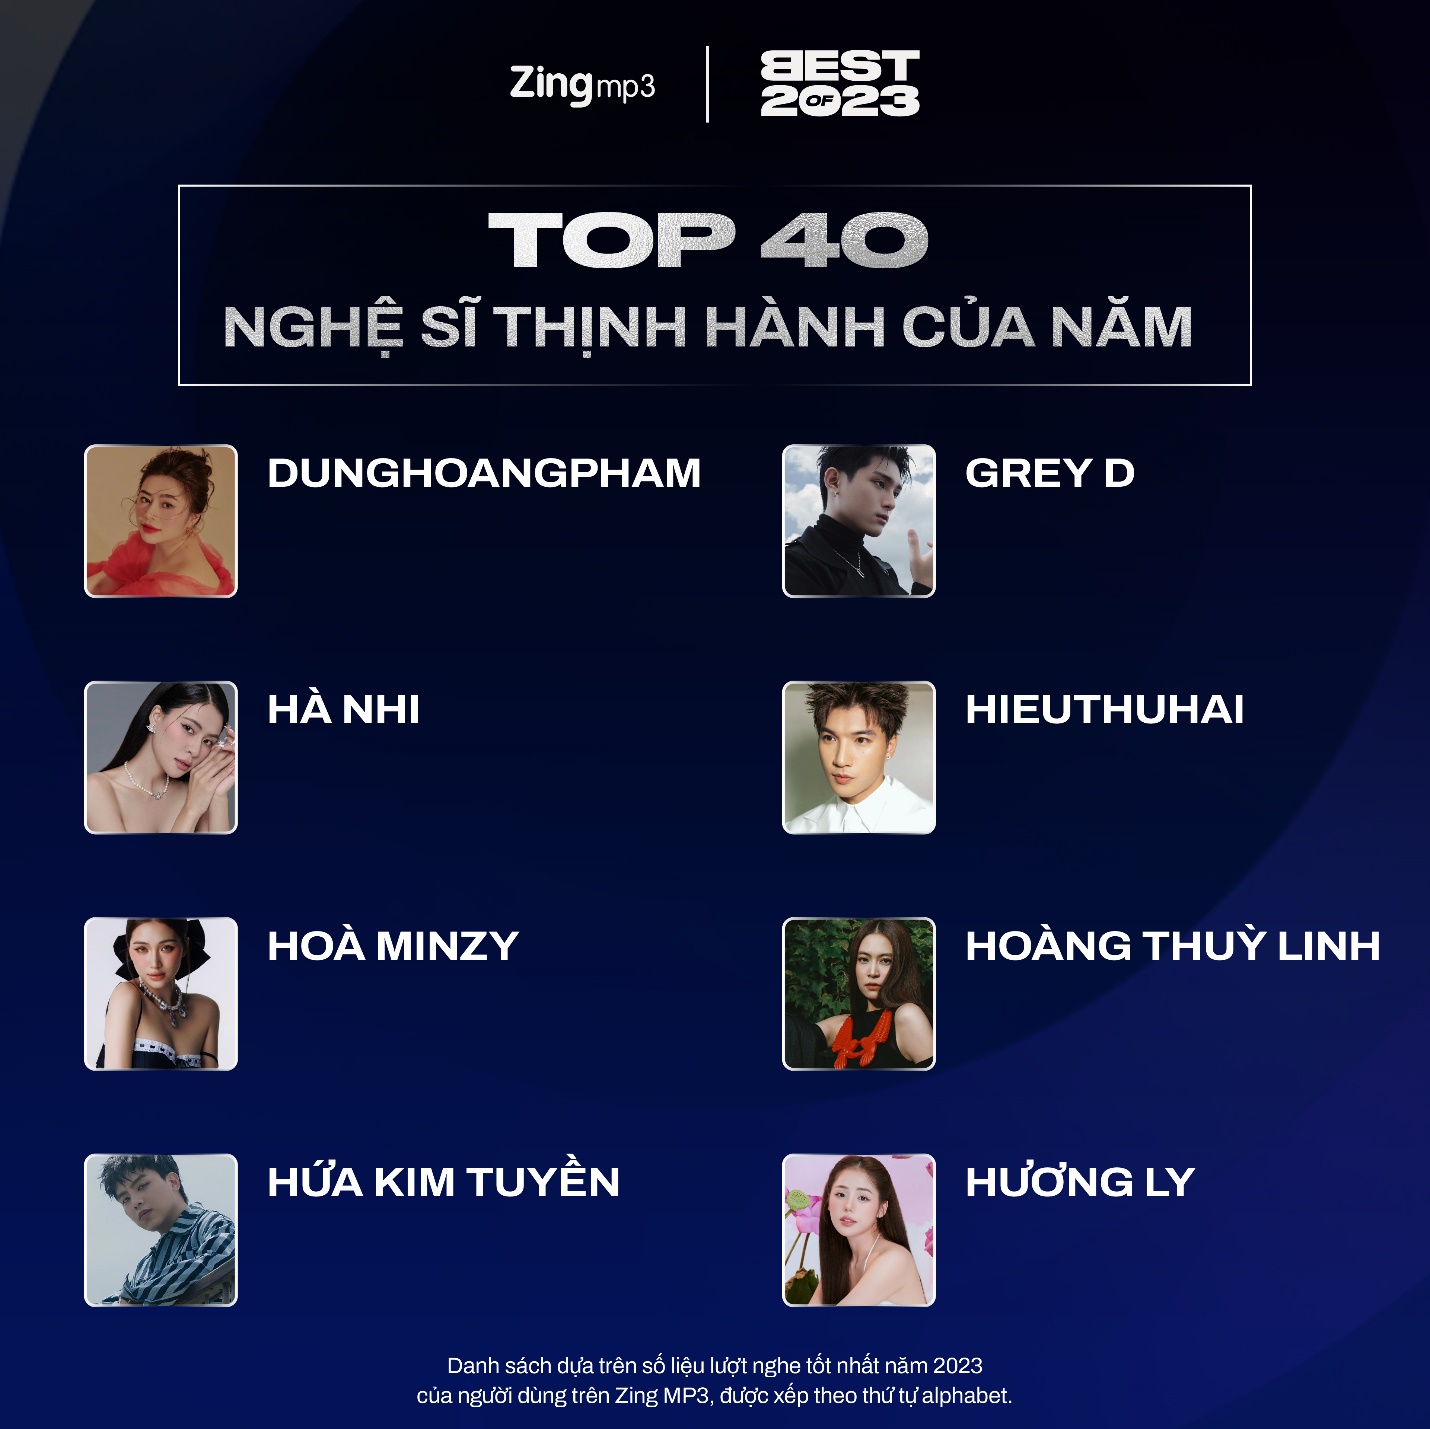 Top 40 nghệ sĩ và bài hát thịnh hành nhất Vpop năm 2023: Tăng Duy Tân lập cú đúp - Ảnh 3.